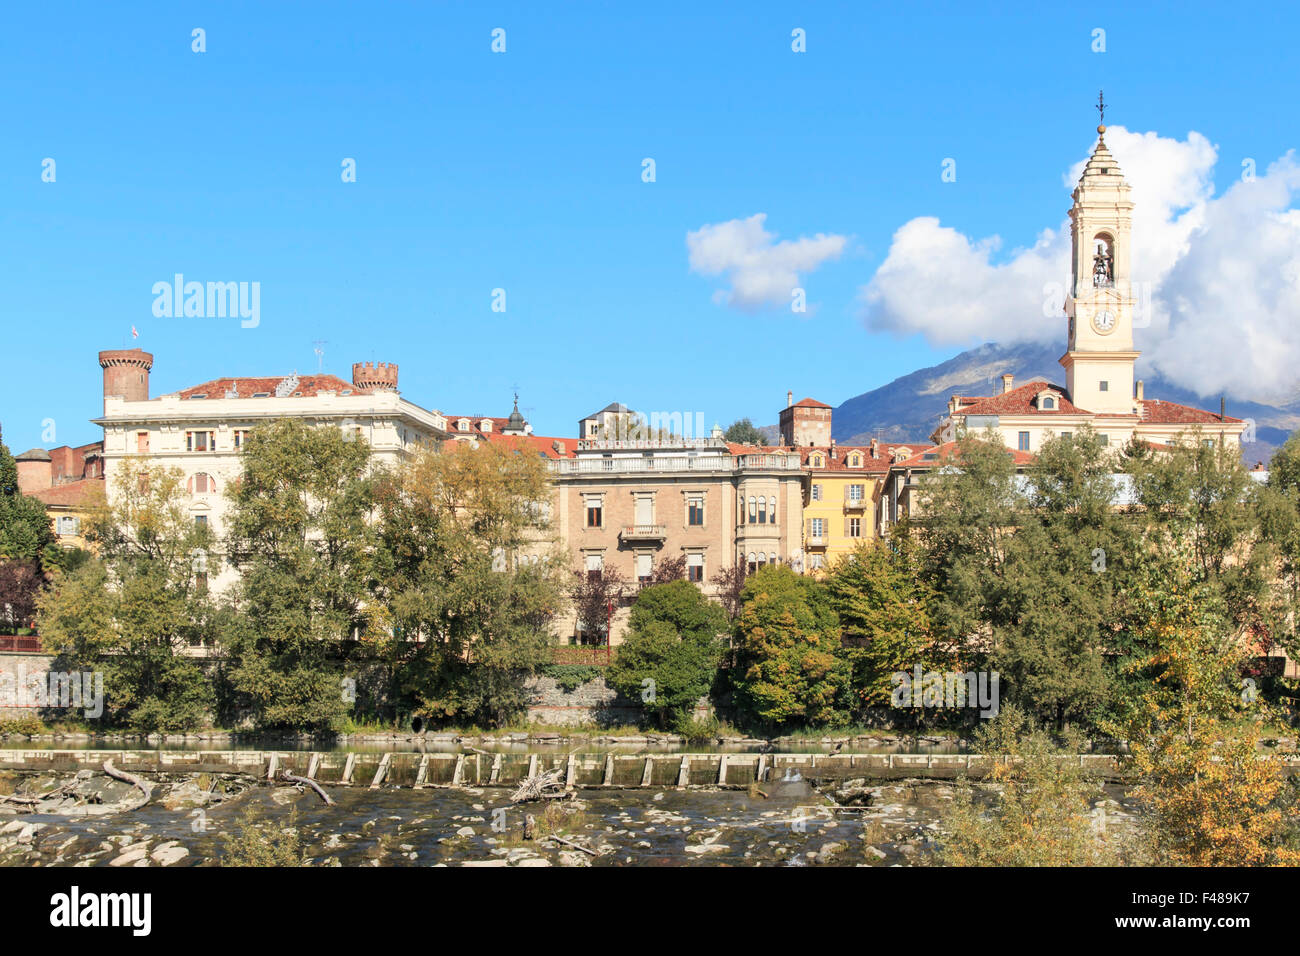 Dora Baltea River and Ivrea cityscape in Piedmont, Italy Stock Photo